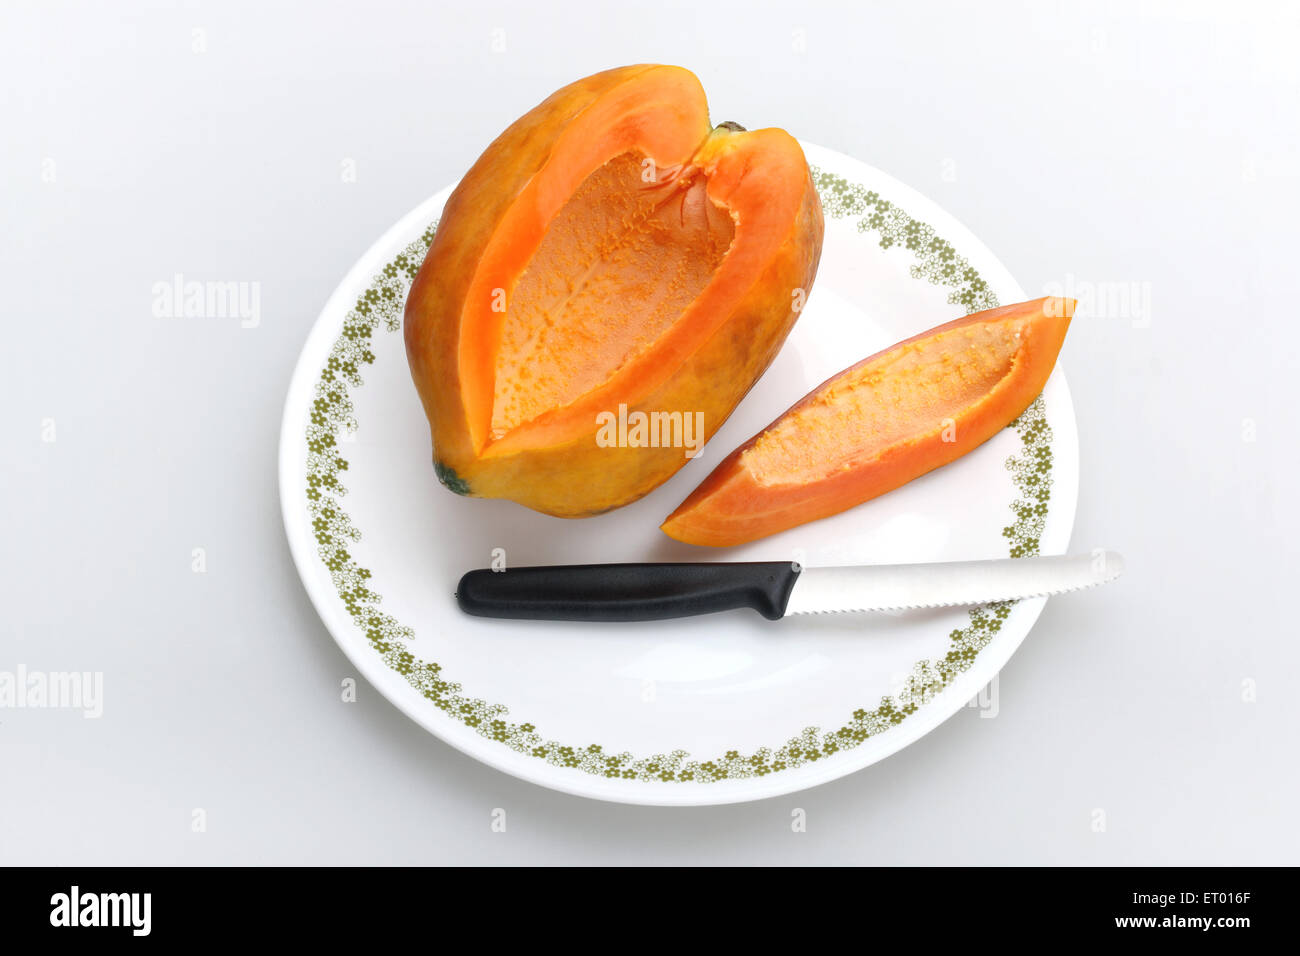 Fruits de papaye Carica papaya latine ; slice et couteau sur une plaque blanche Banque D'Images